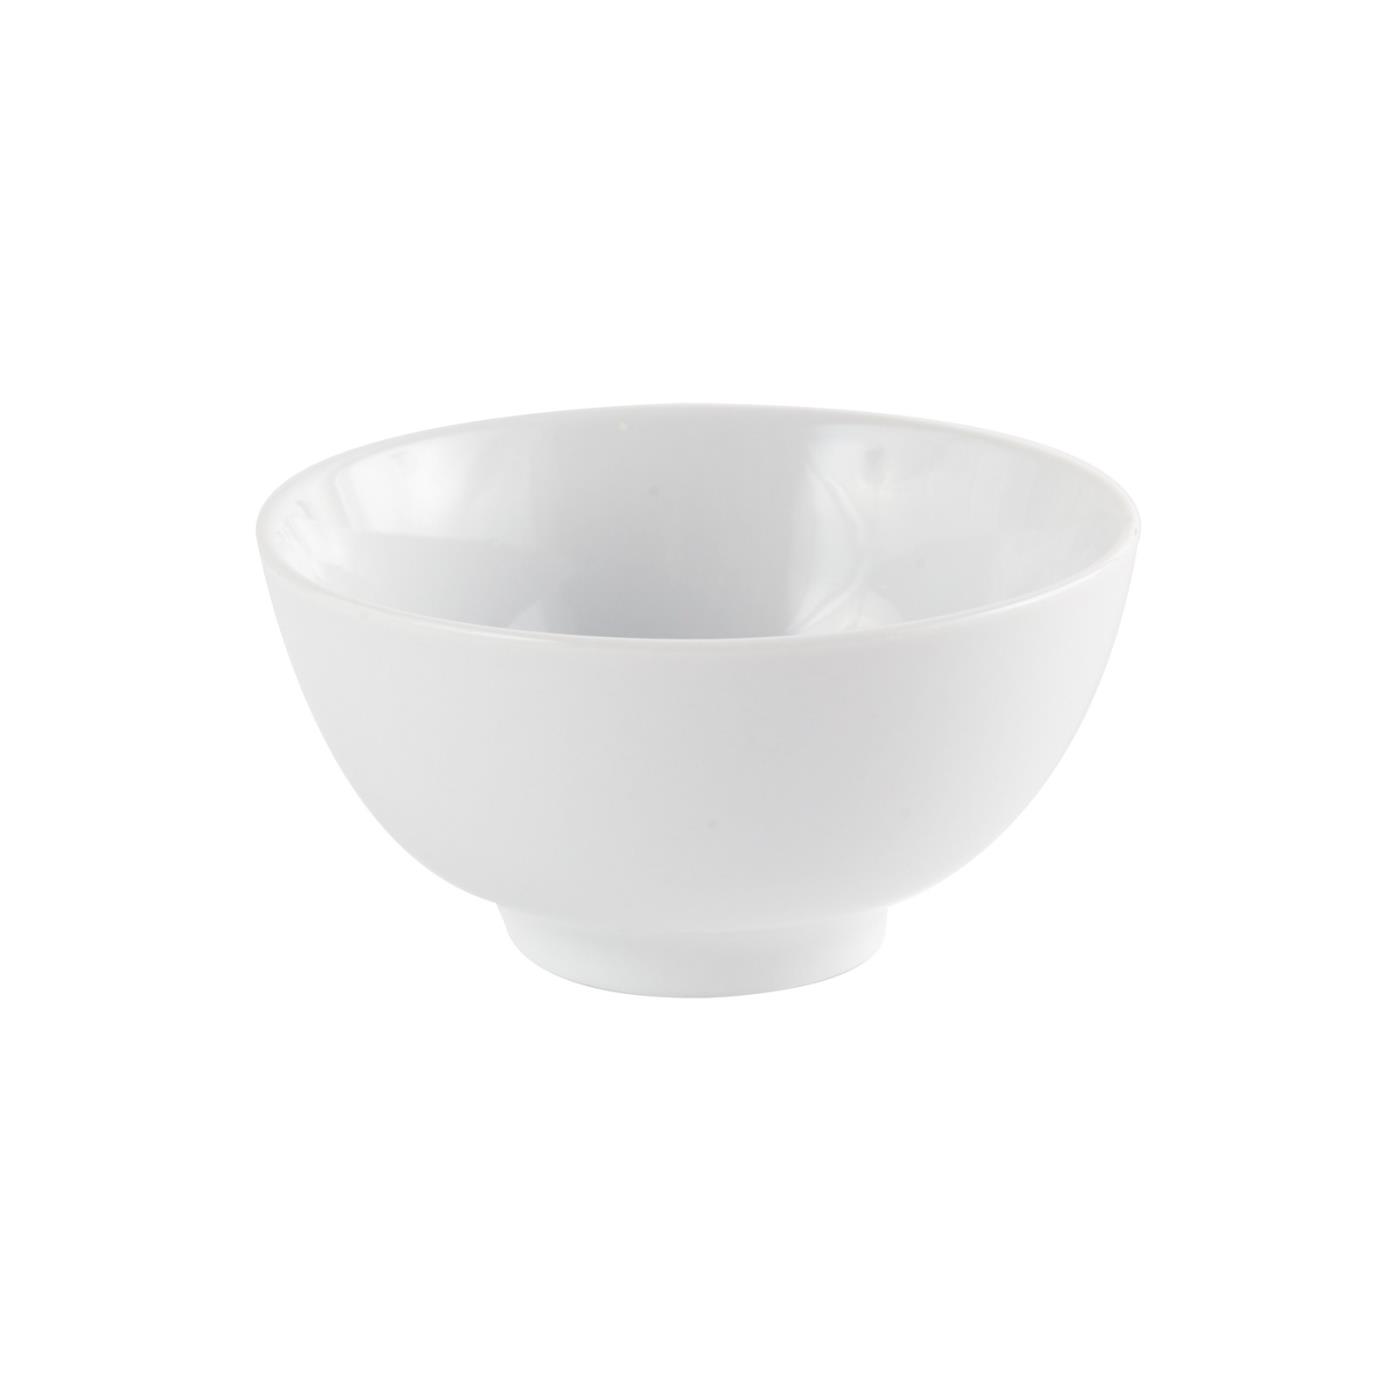 White Ceramic Round Rice Bowl - 5"